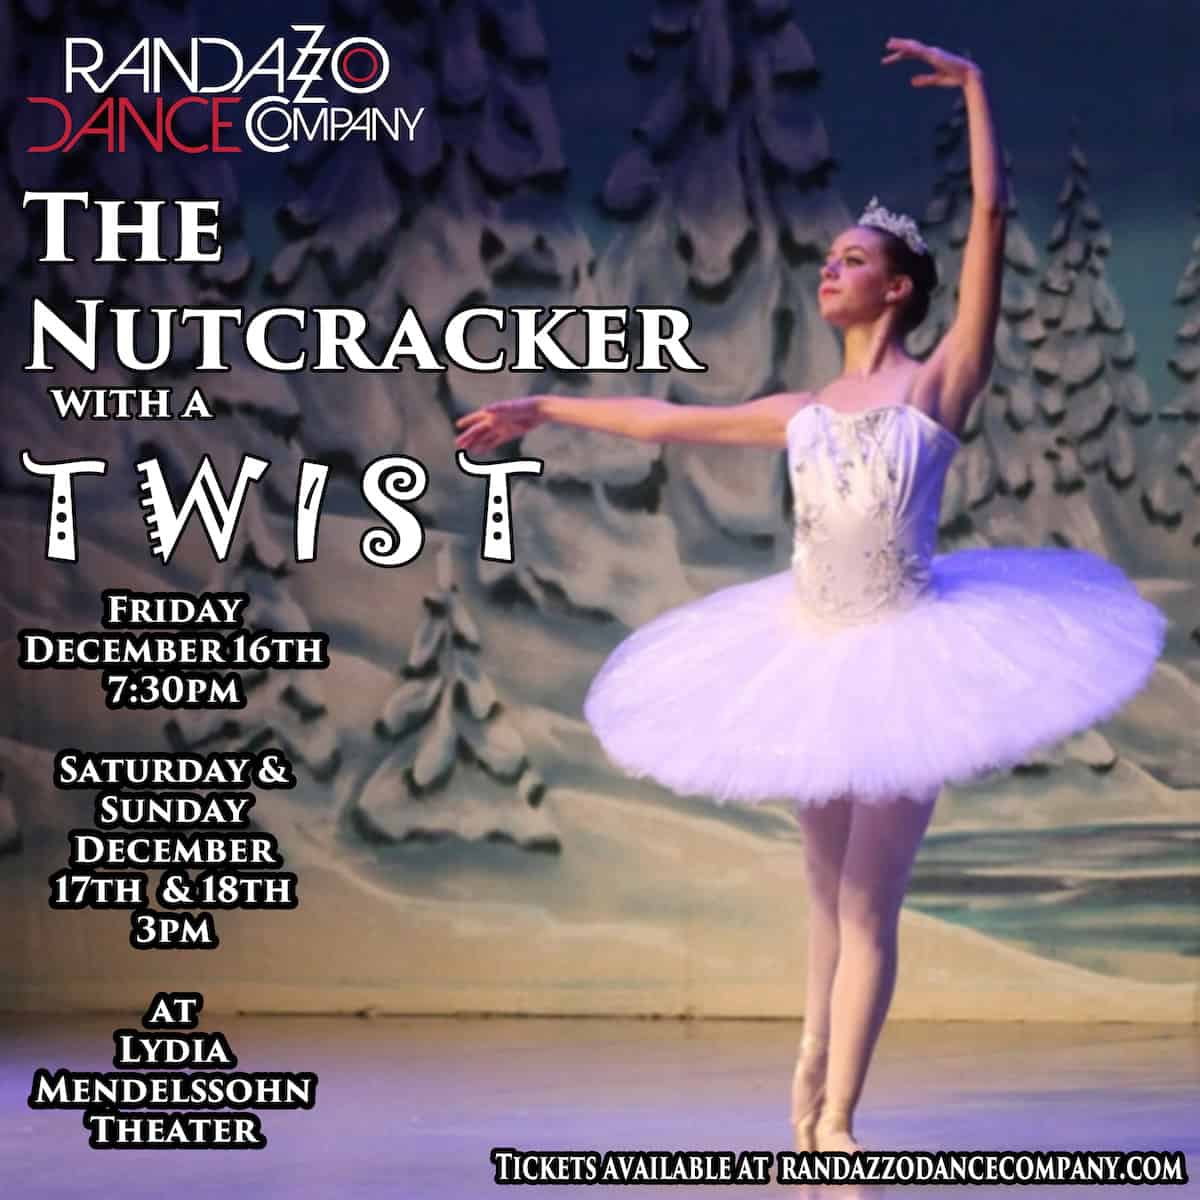 Randazzo Dance Company's The Nutcracker with a Twist